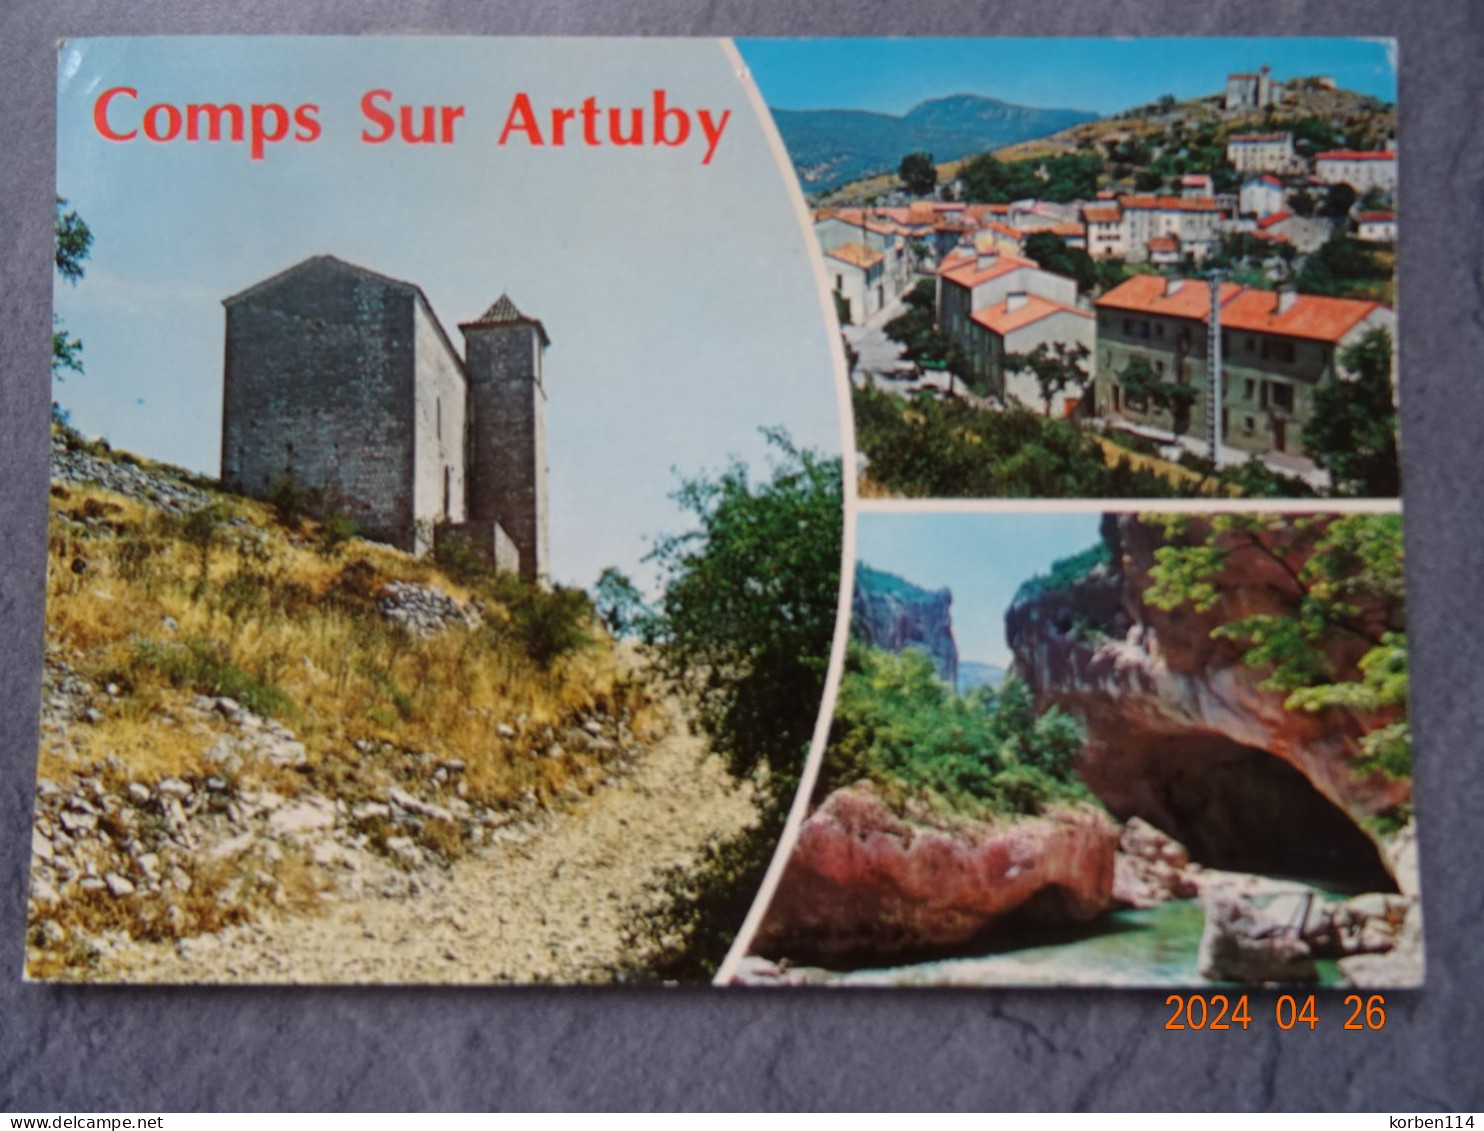 COMPS SUR ARTUBY - Comps-sur-Artuby